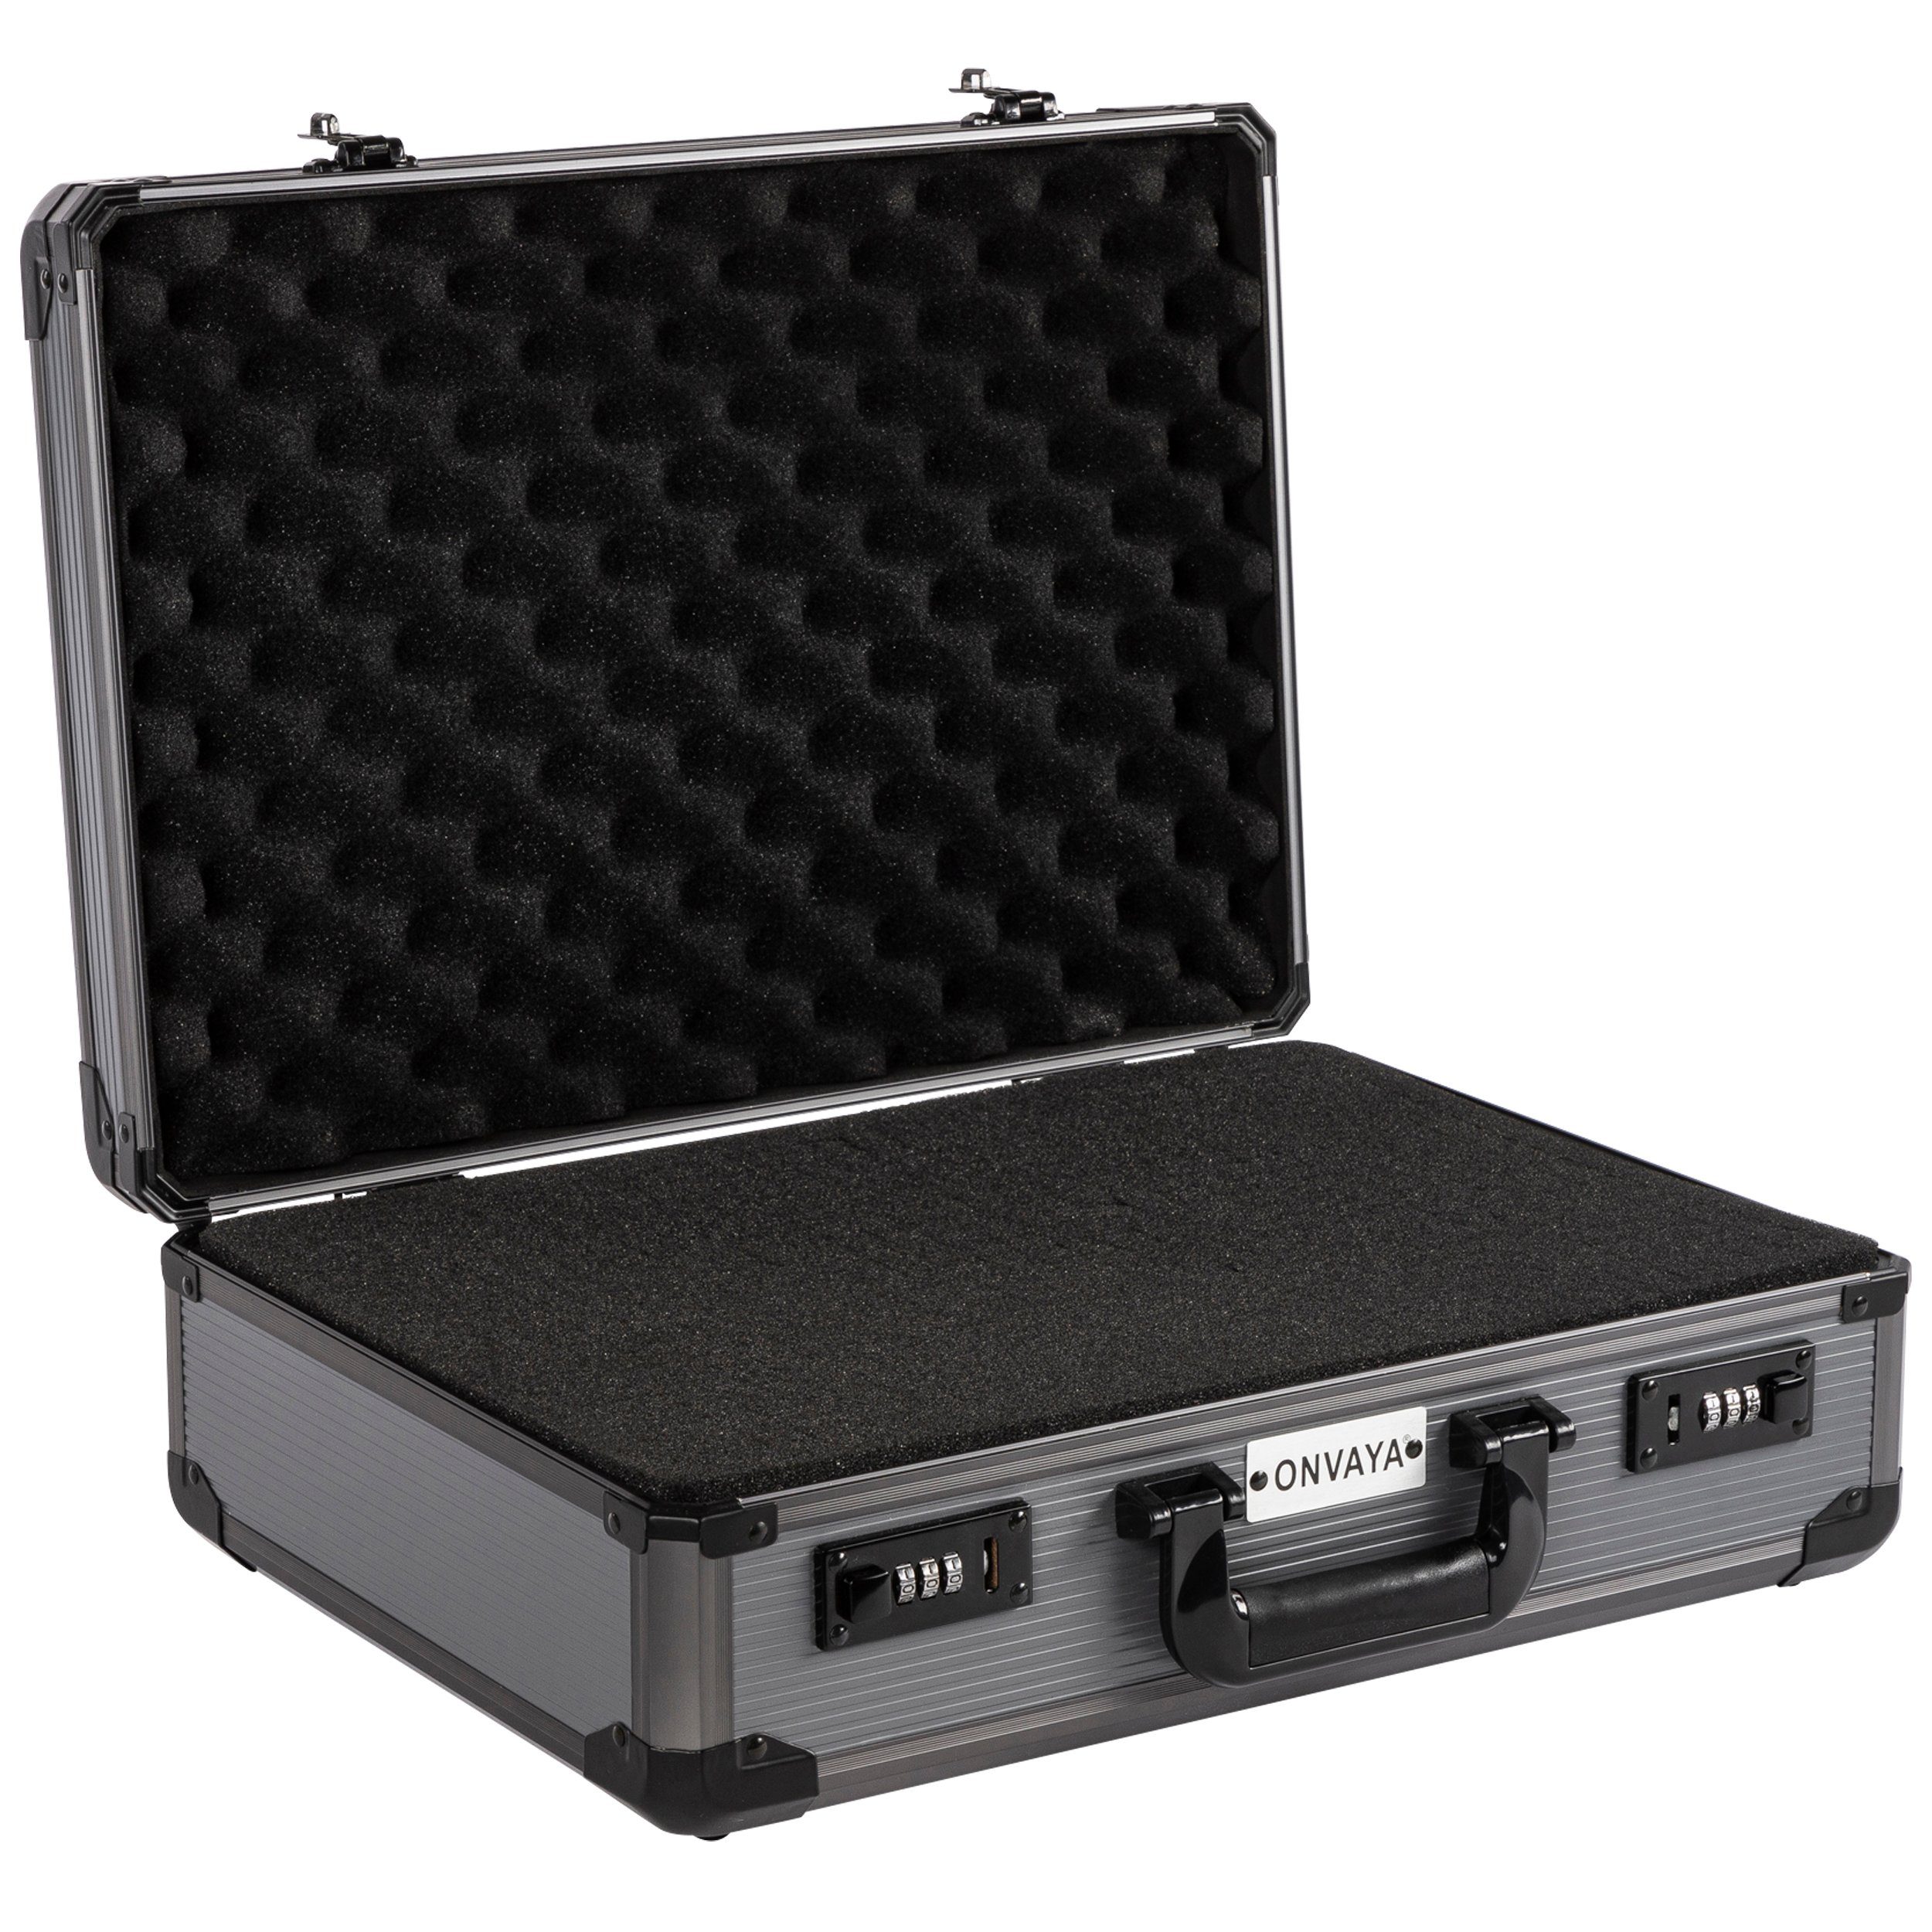 ONVAYA Koffer Alukoffer mit Zahlenschloss, Aktenkoffer aus Aluminium mit Schaumstoff schwarz